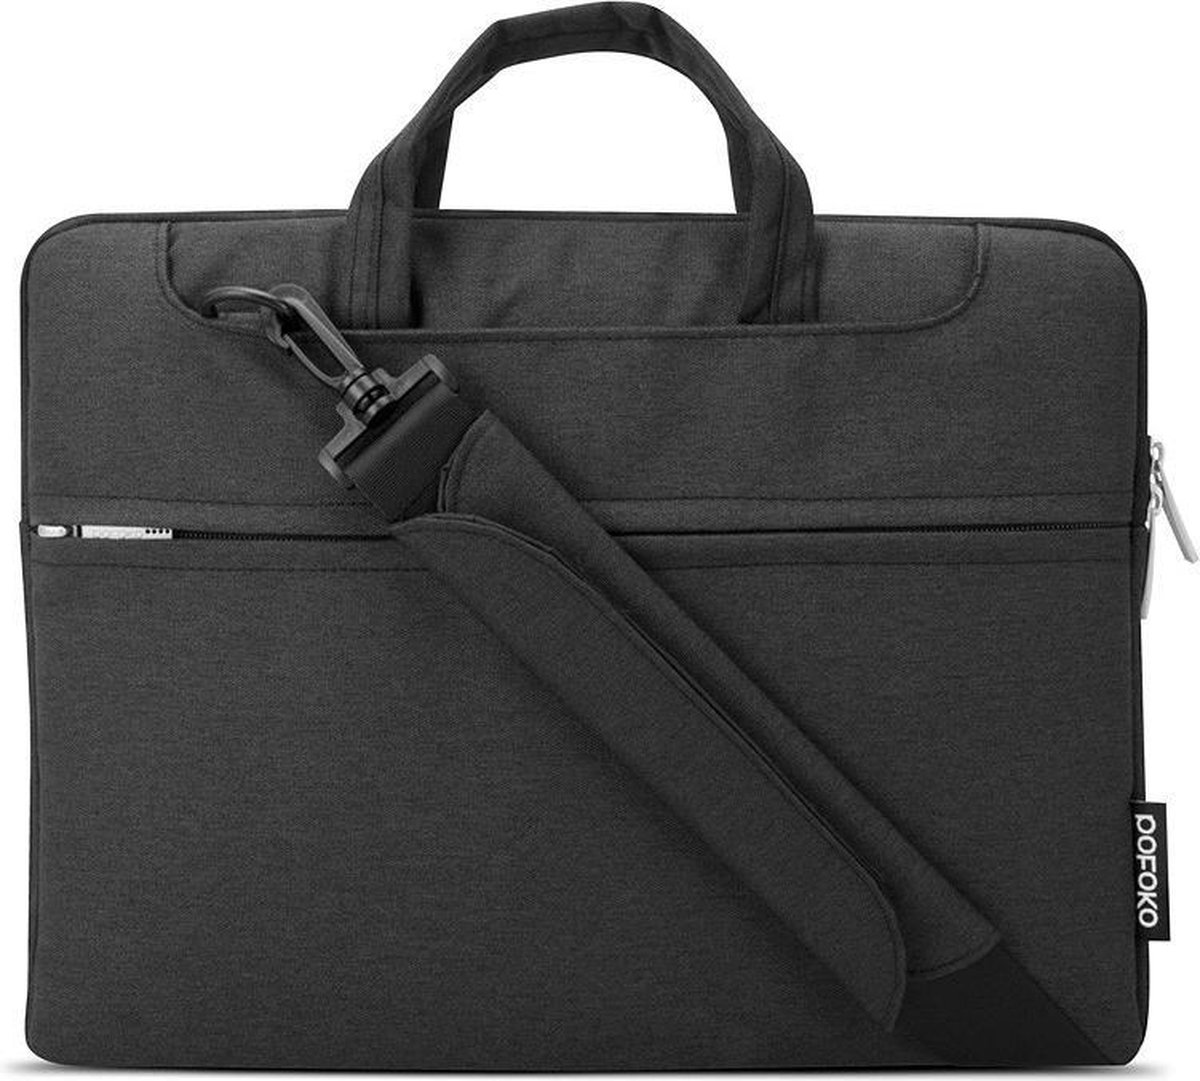 POFOKO 11.6 inch laptoptas met schouderband - Zwart